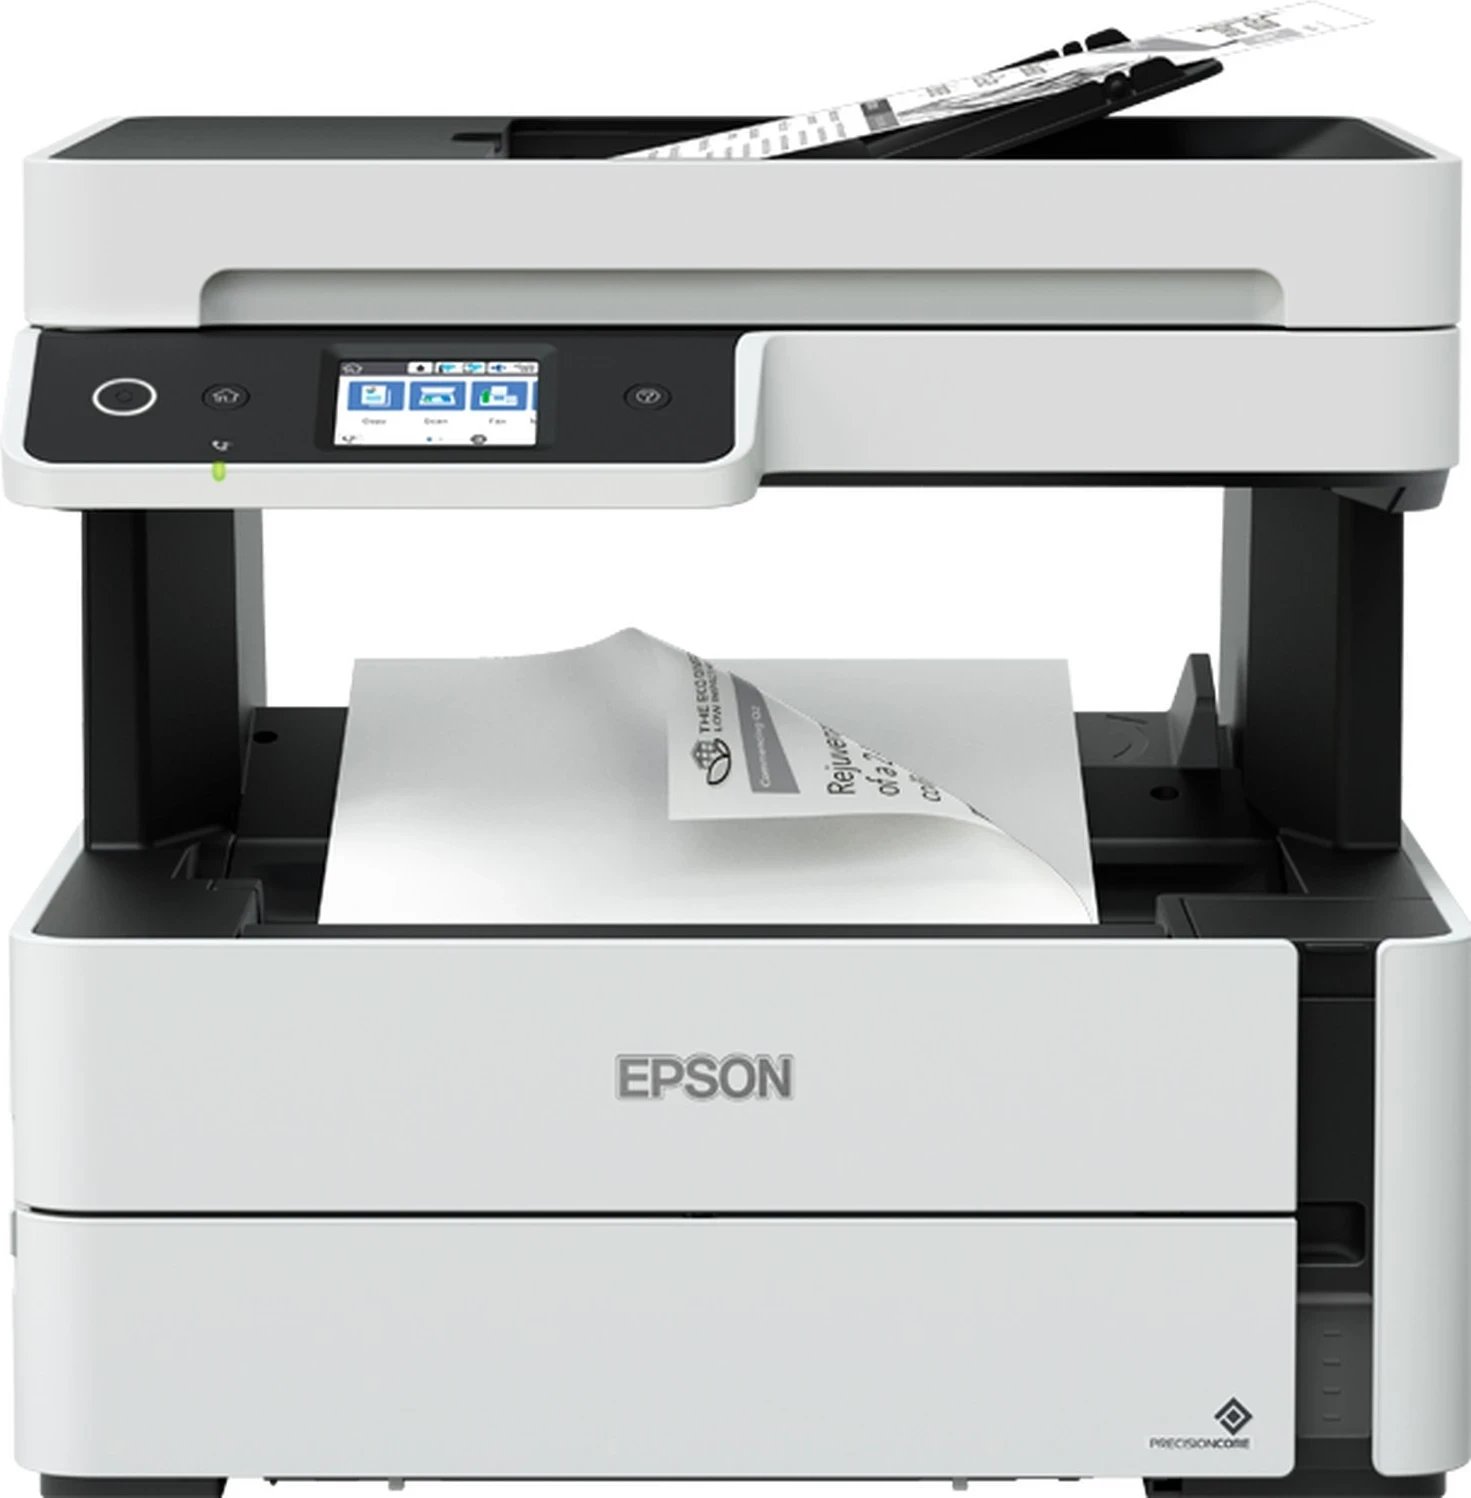 Printer Epson M3170, i bardhë